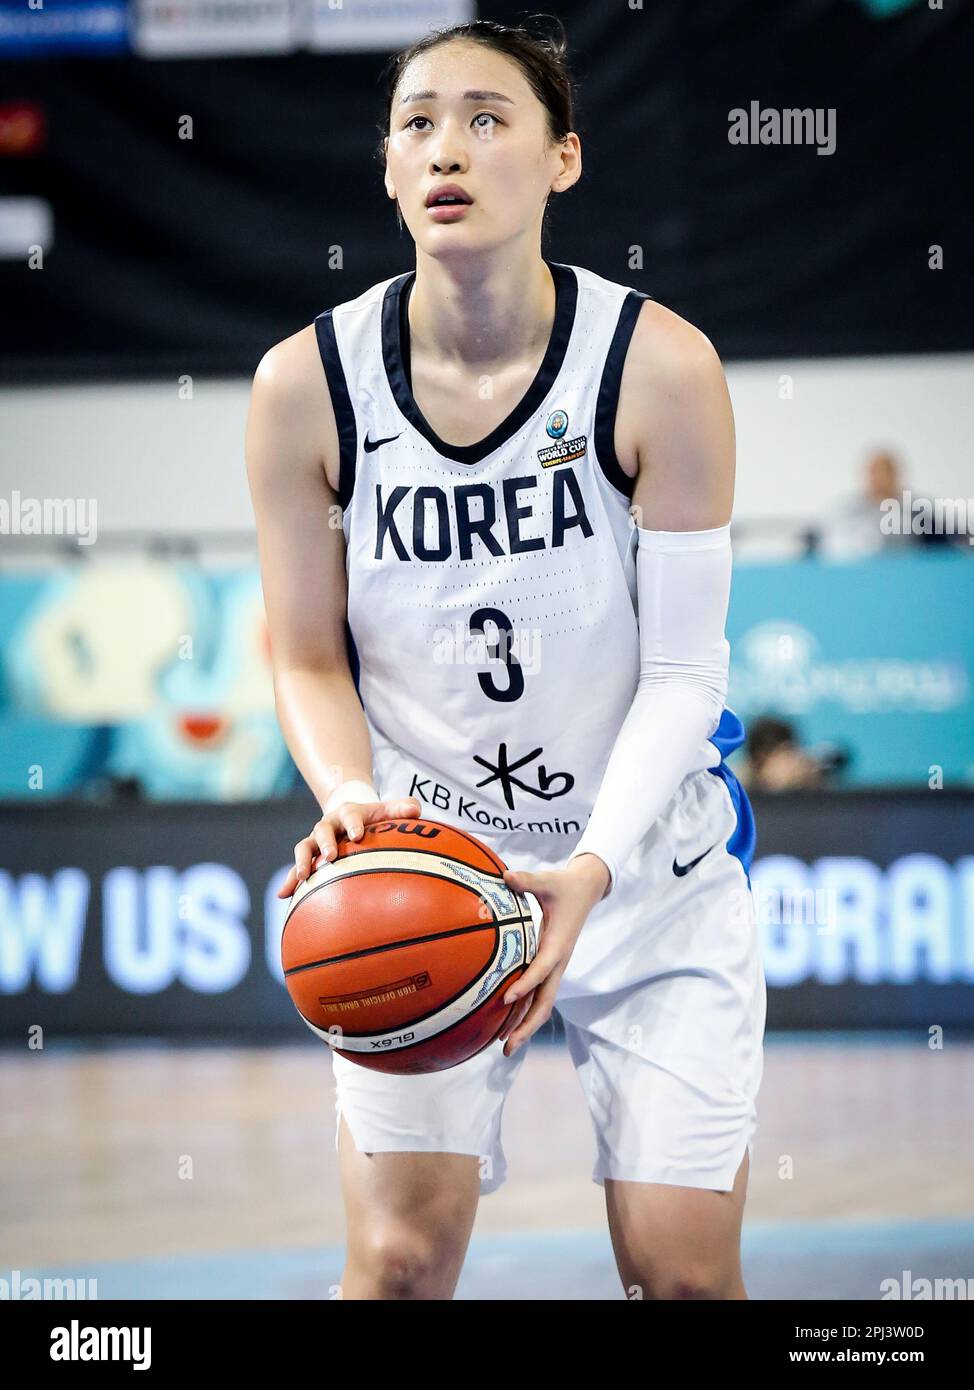 Espagne, Ténérife, 25 septembre 2018: La joueuse de basket-ball féminine coréenne Leeseul Kang pendant la coupe du monde de basket-ball féminin Banque D'Images